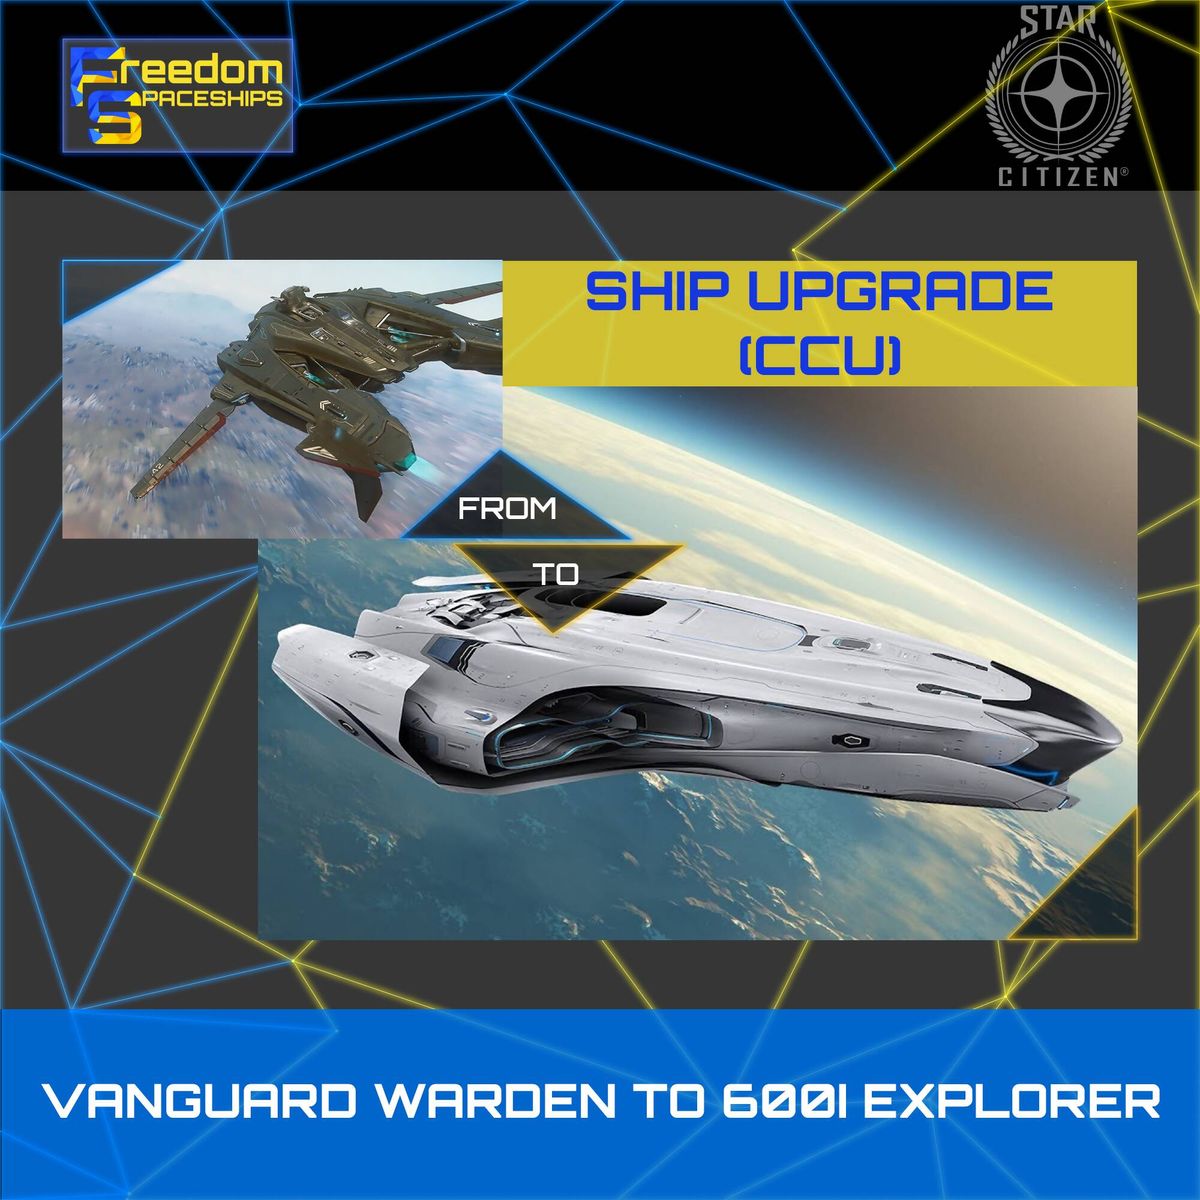 Upgrade - Vanguard Warden to 600i Explorer